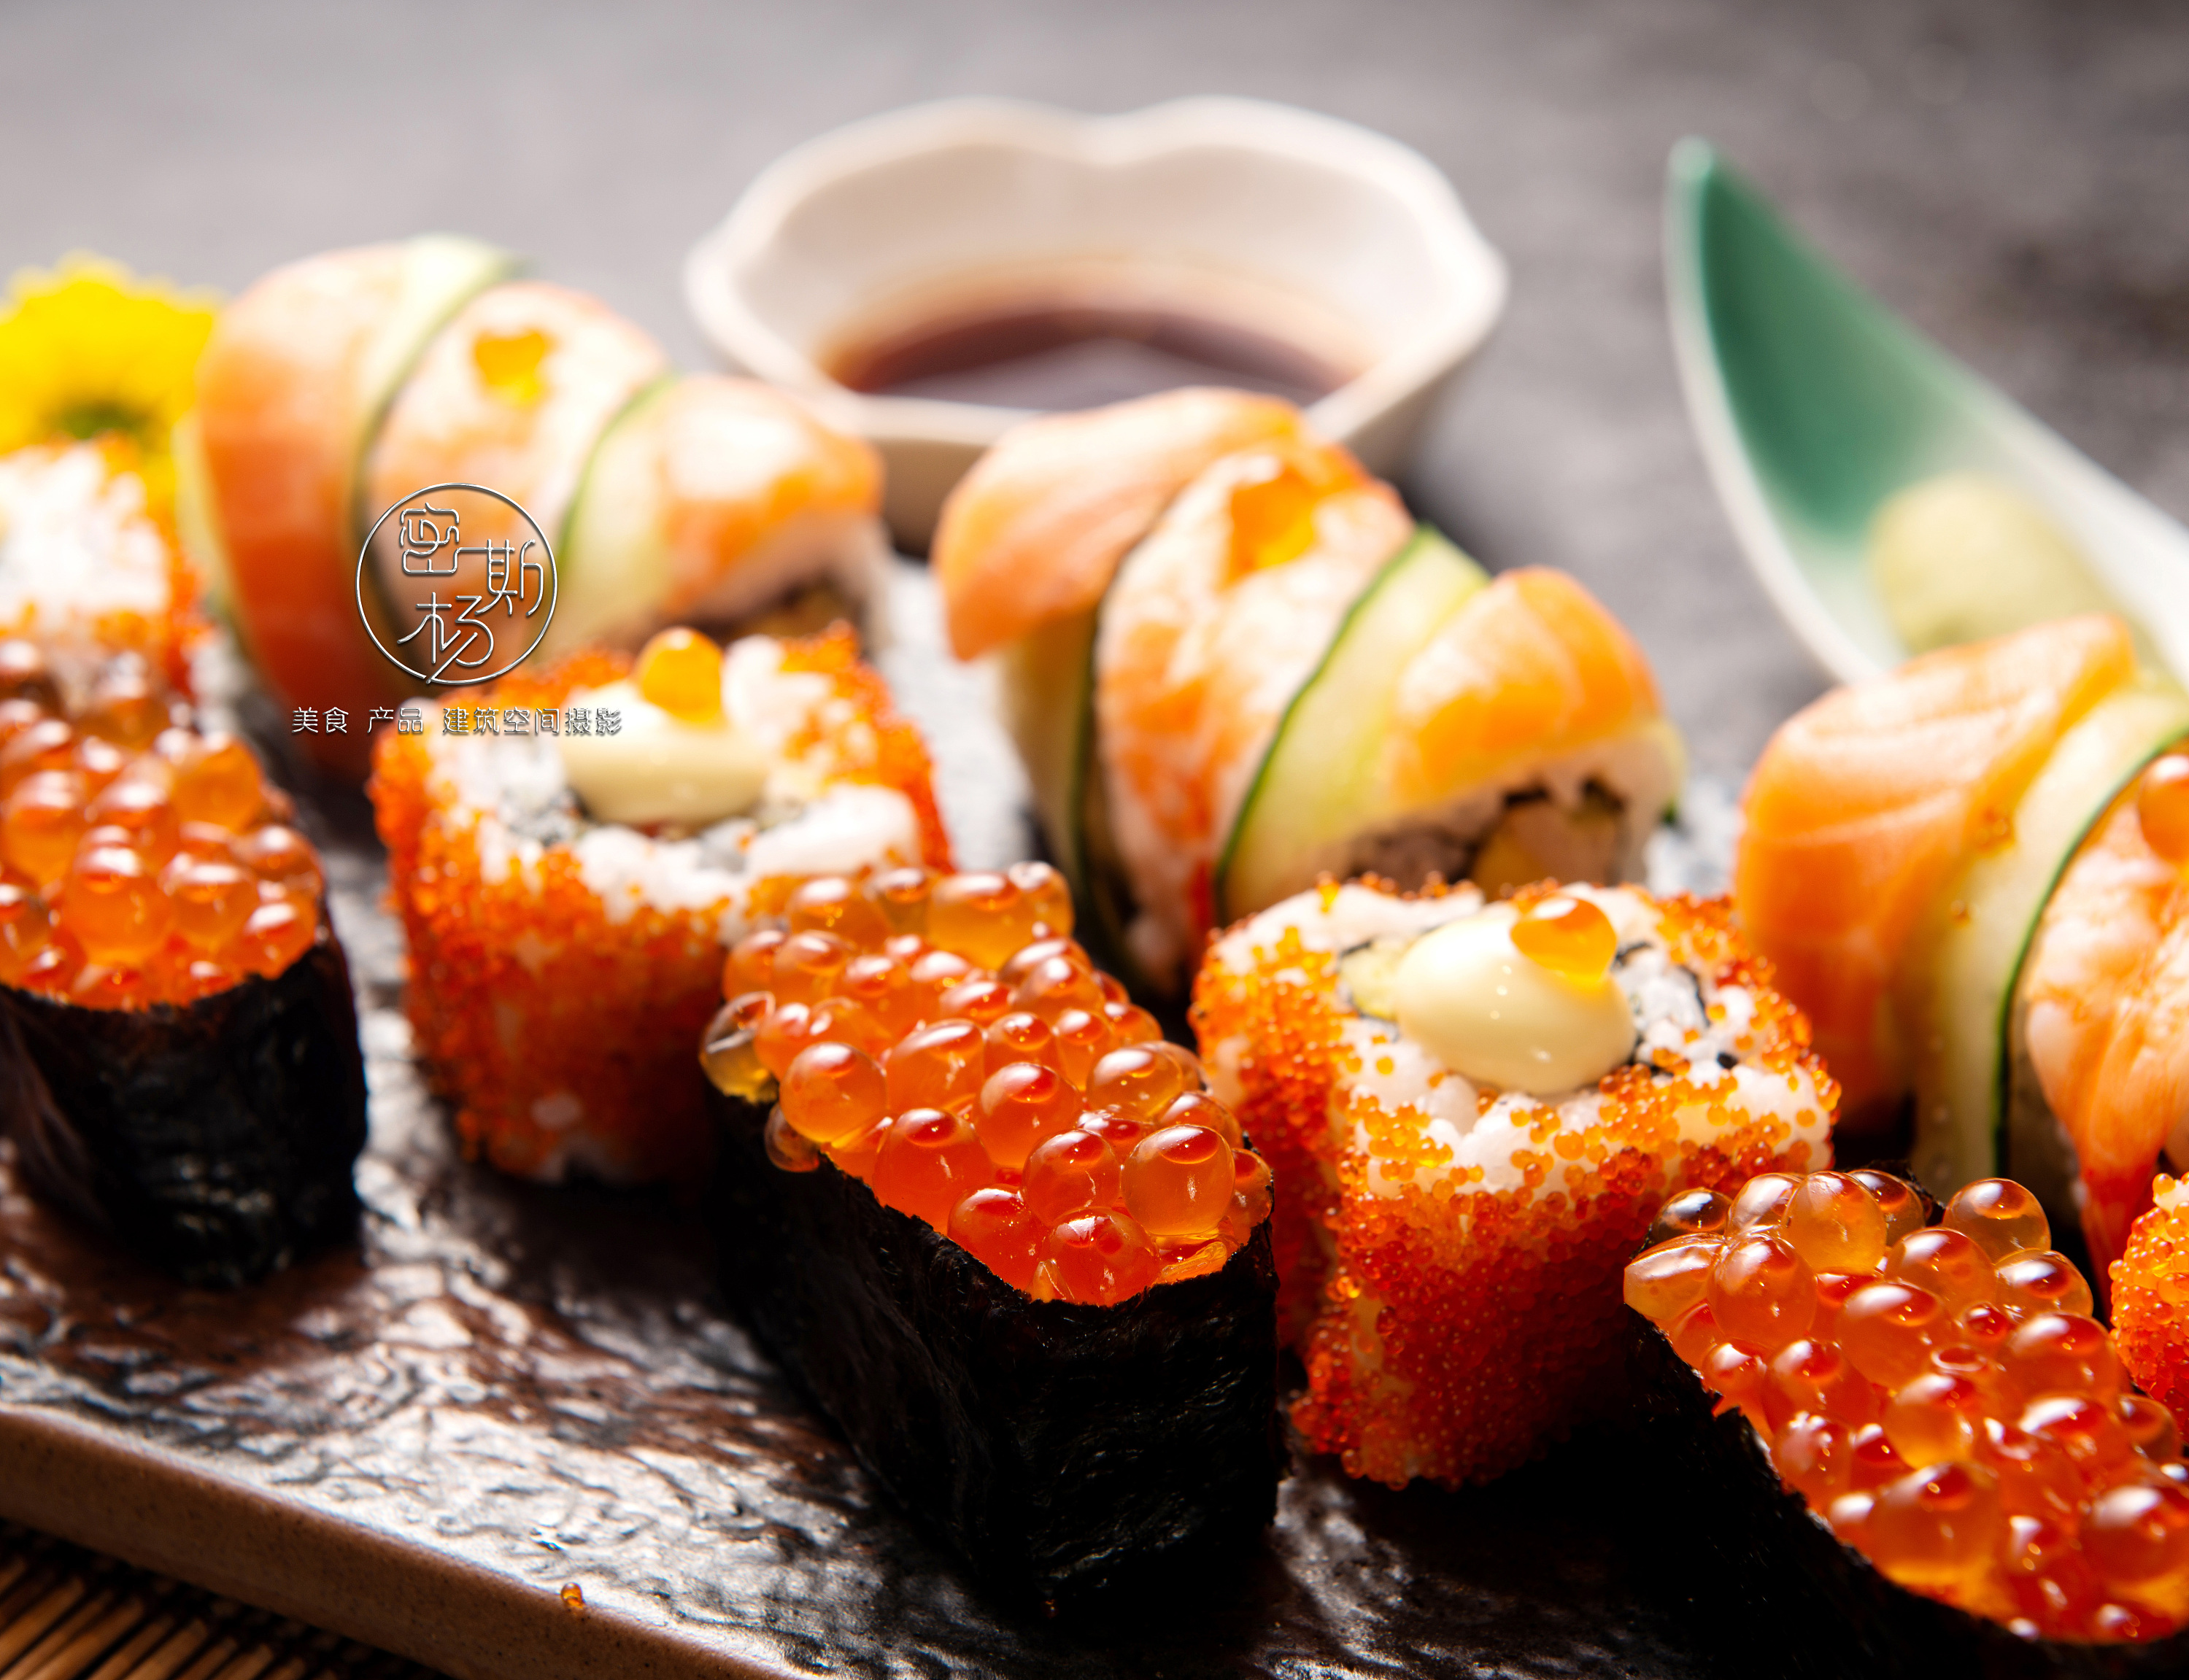 鱼子酱寿司卷 传统 库存图片. 图片 包括有 三文鱼, 彩虹, 传统, 设置, 楚卡, 鲜美, 烤肉, 日本 - 182802365